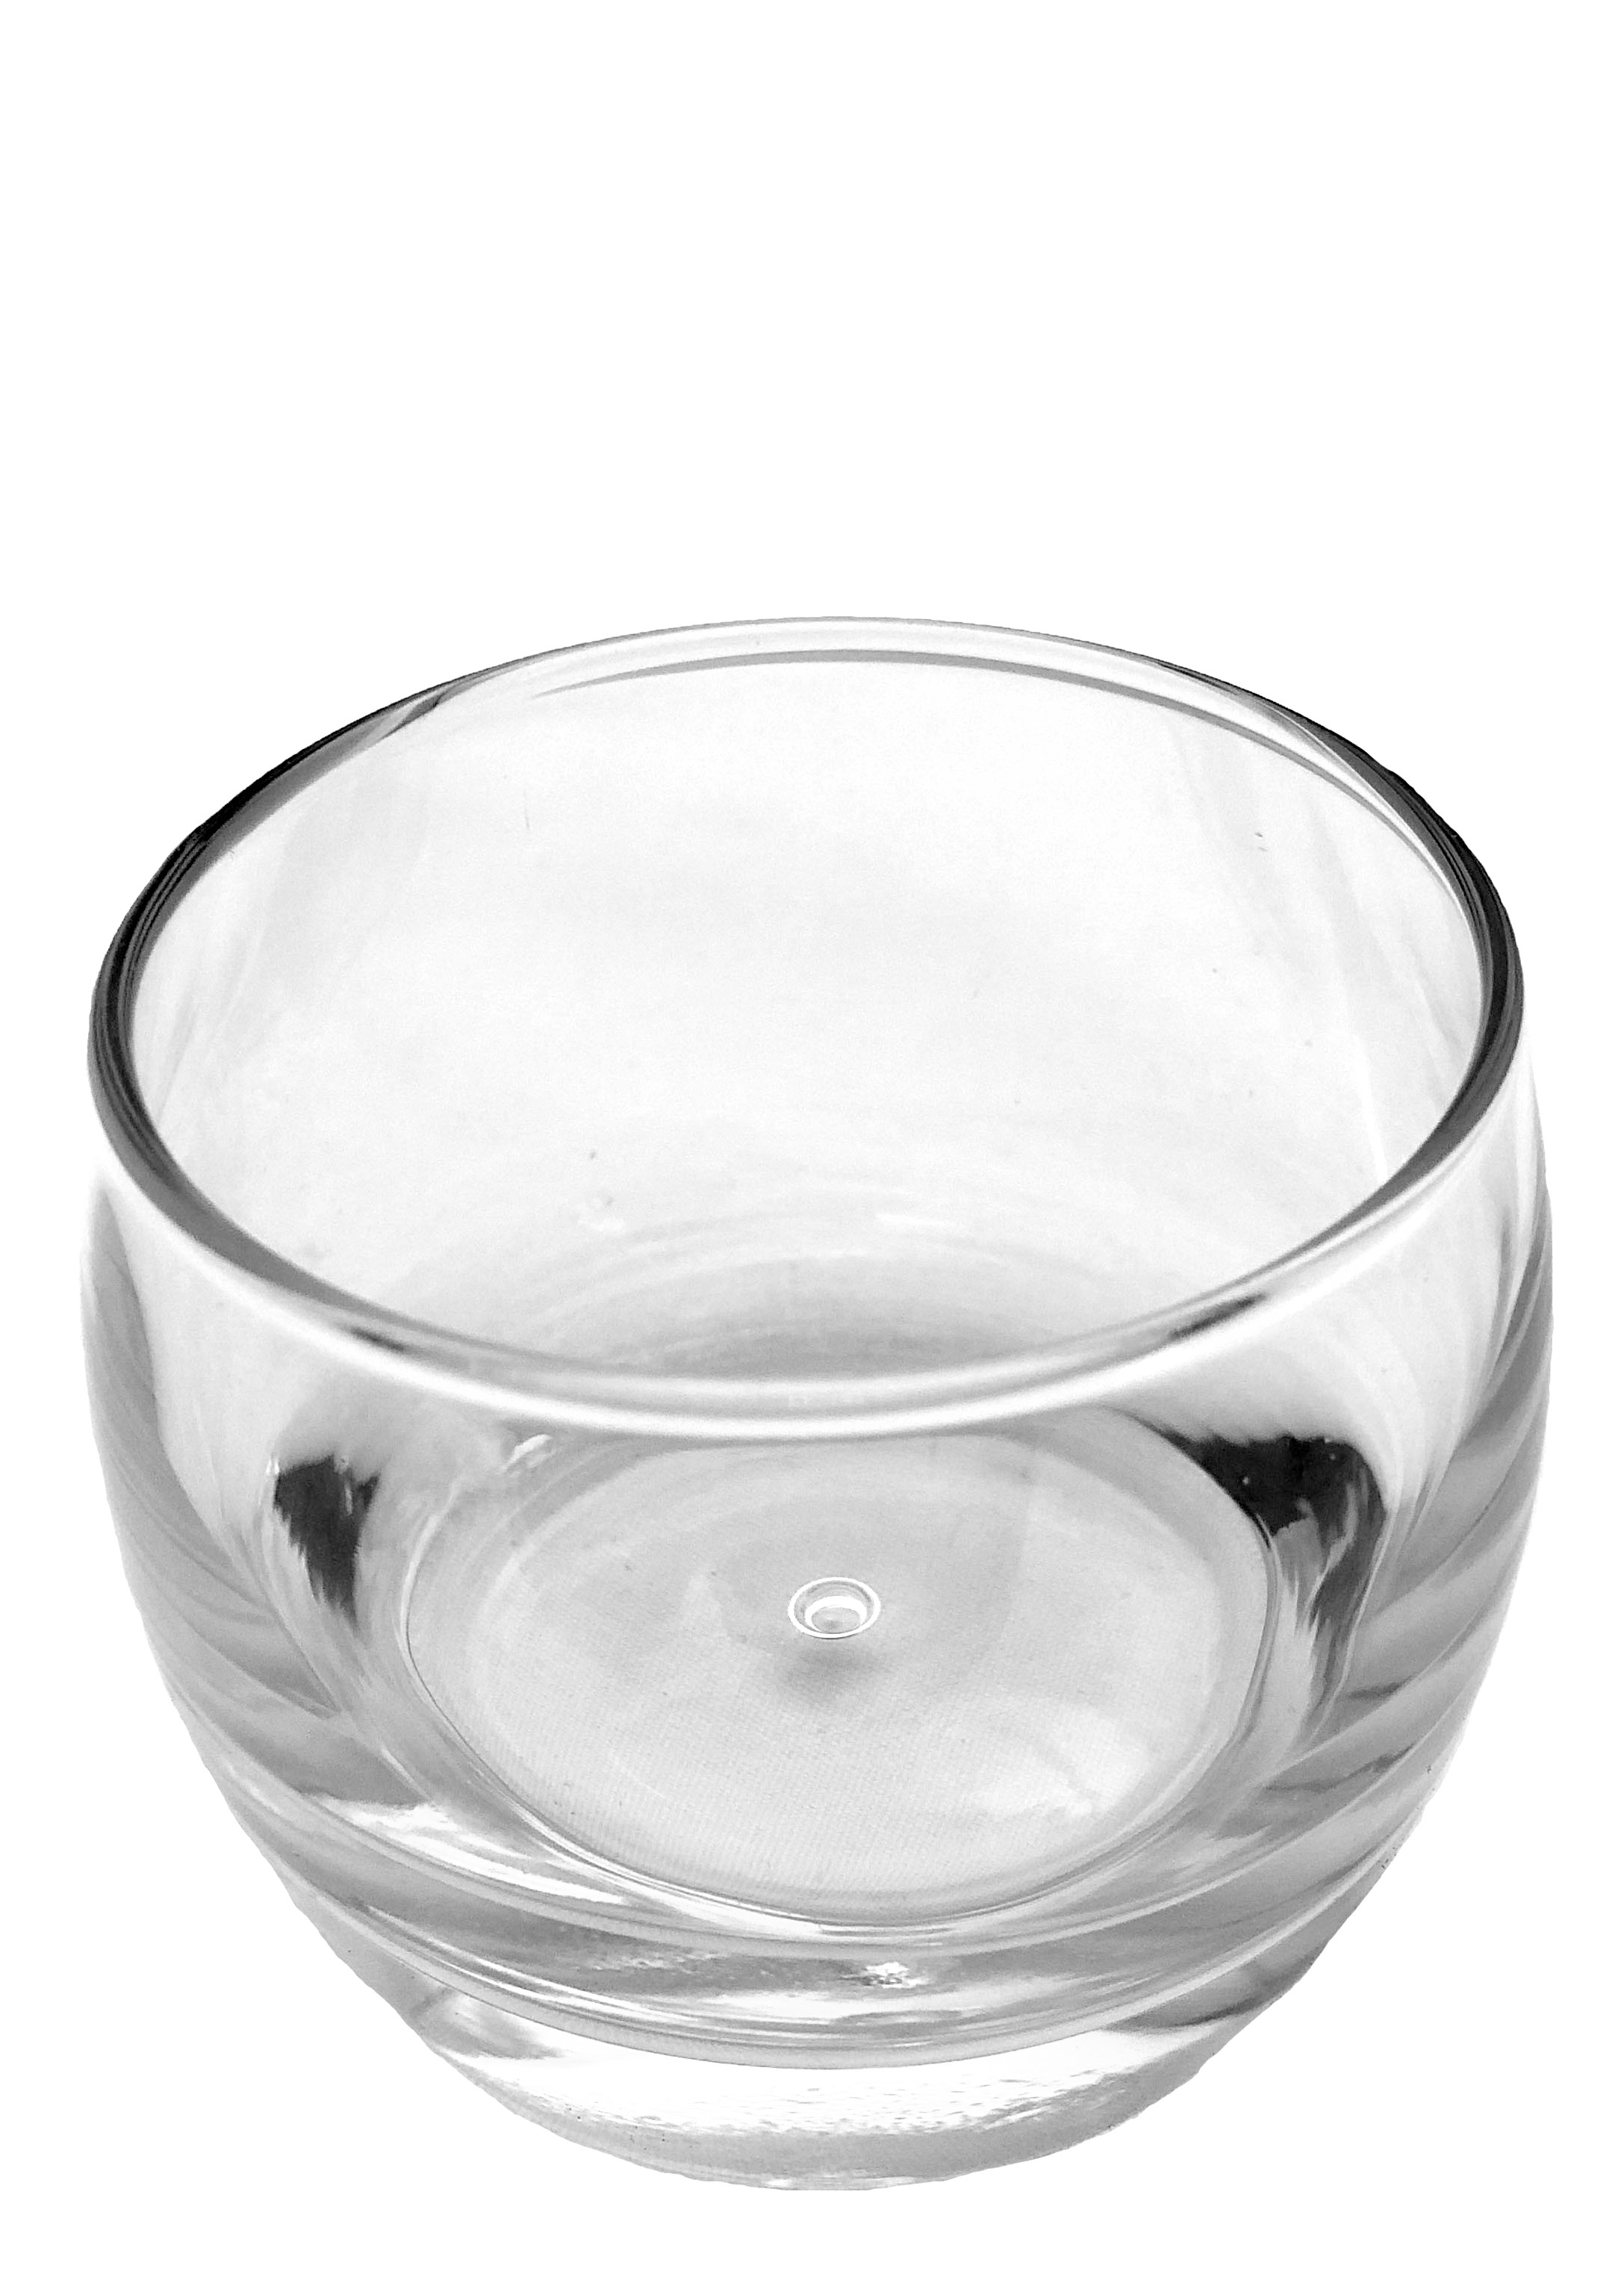 category_C1227 - Bubble Based Whisky Tumbler 6oz